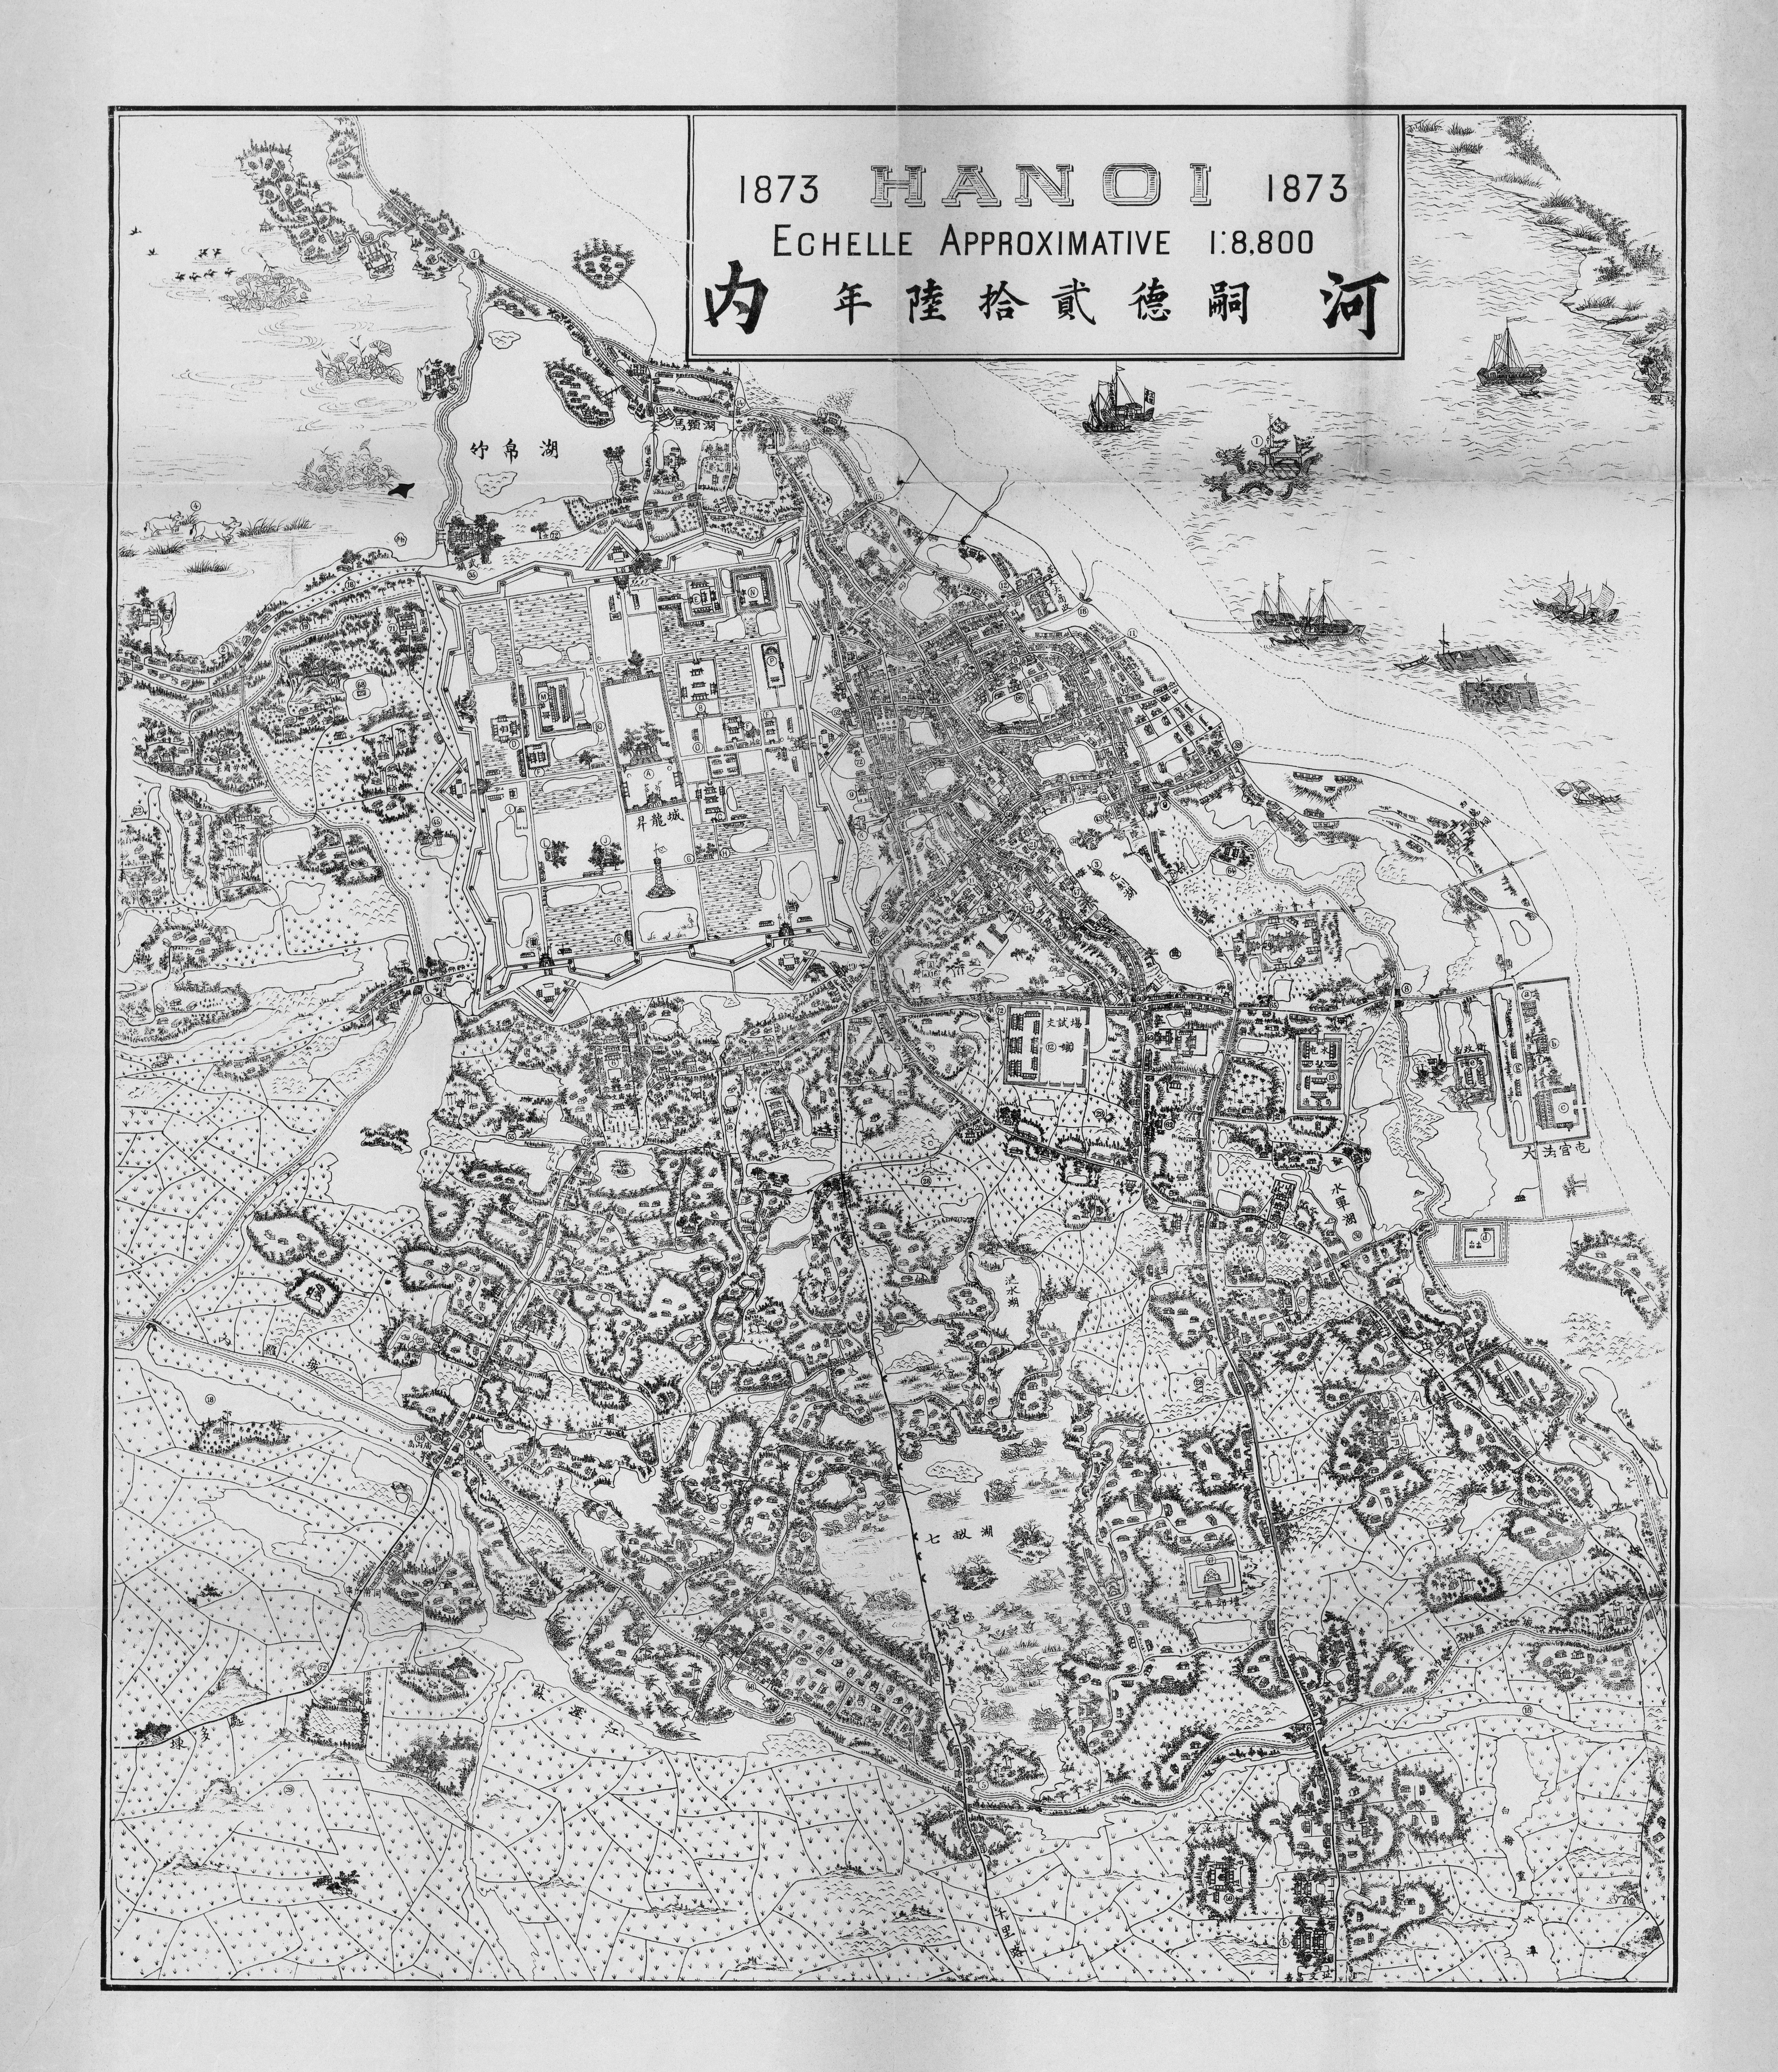 Bản đồ Hà Nội năm 1873 cho chúng ta thấy một Hà Nội khác hẳn so với hiện tại. Thành phố này lúc đó được bao quanh bởi các cánh đồng lúa và nhiều con sông đào thông. Nếu bạn muốn khám phá thêm về Hà Nội xưa và cảm nhận sự khác biệt với hiện tại, xem ảnh liên quan đến bản đồ này.